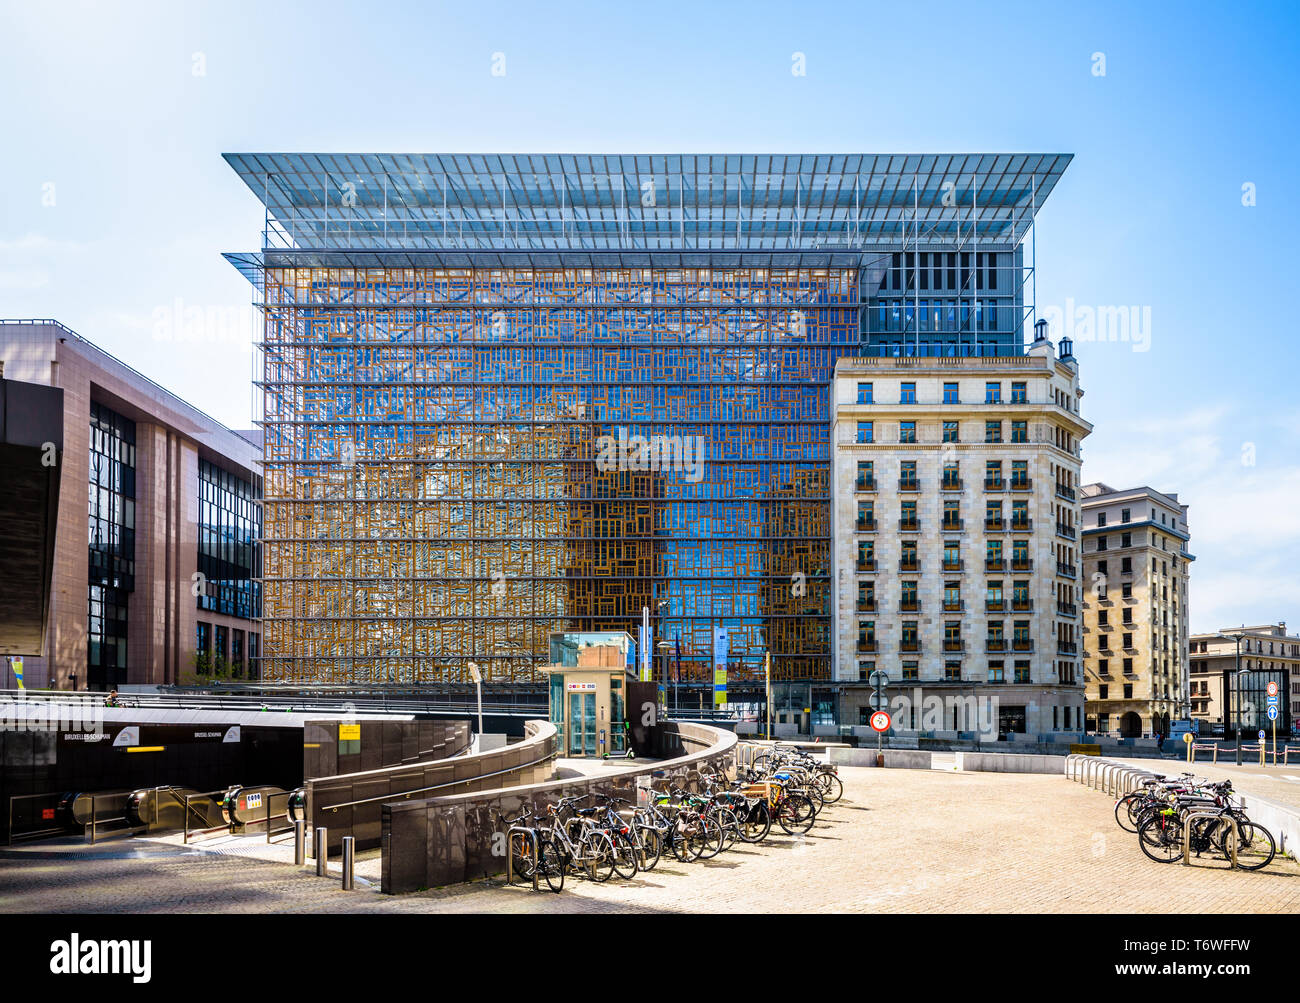 Vorderansicht des Europa-Gebäude, dem Sitz des Rates der Europäischen Union in Brüssel, Belgien, mit Fahrrädern im Vordergrund geparkt. Stockfoto